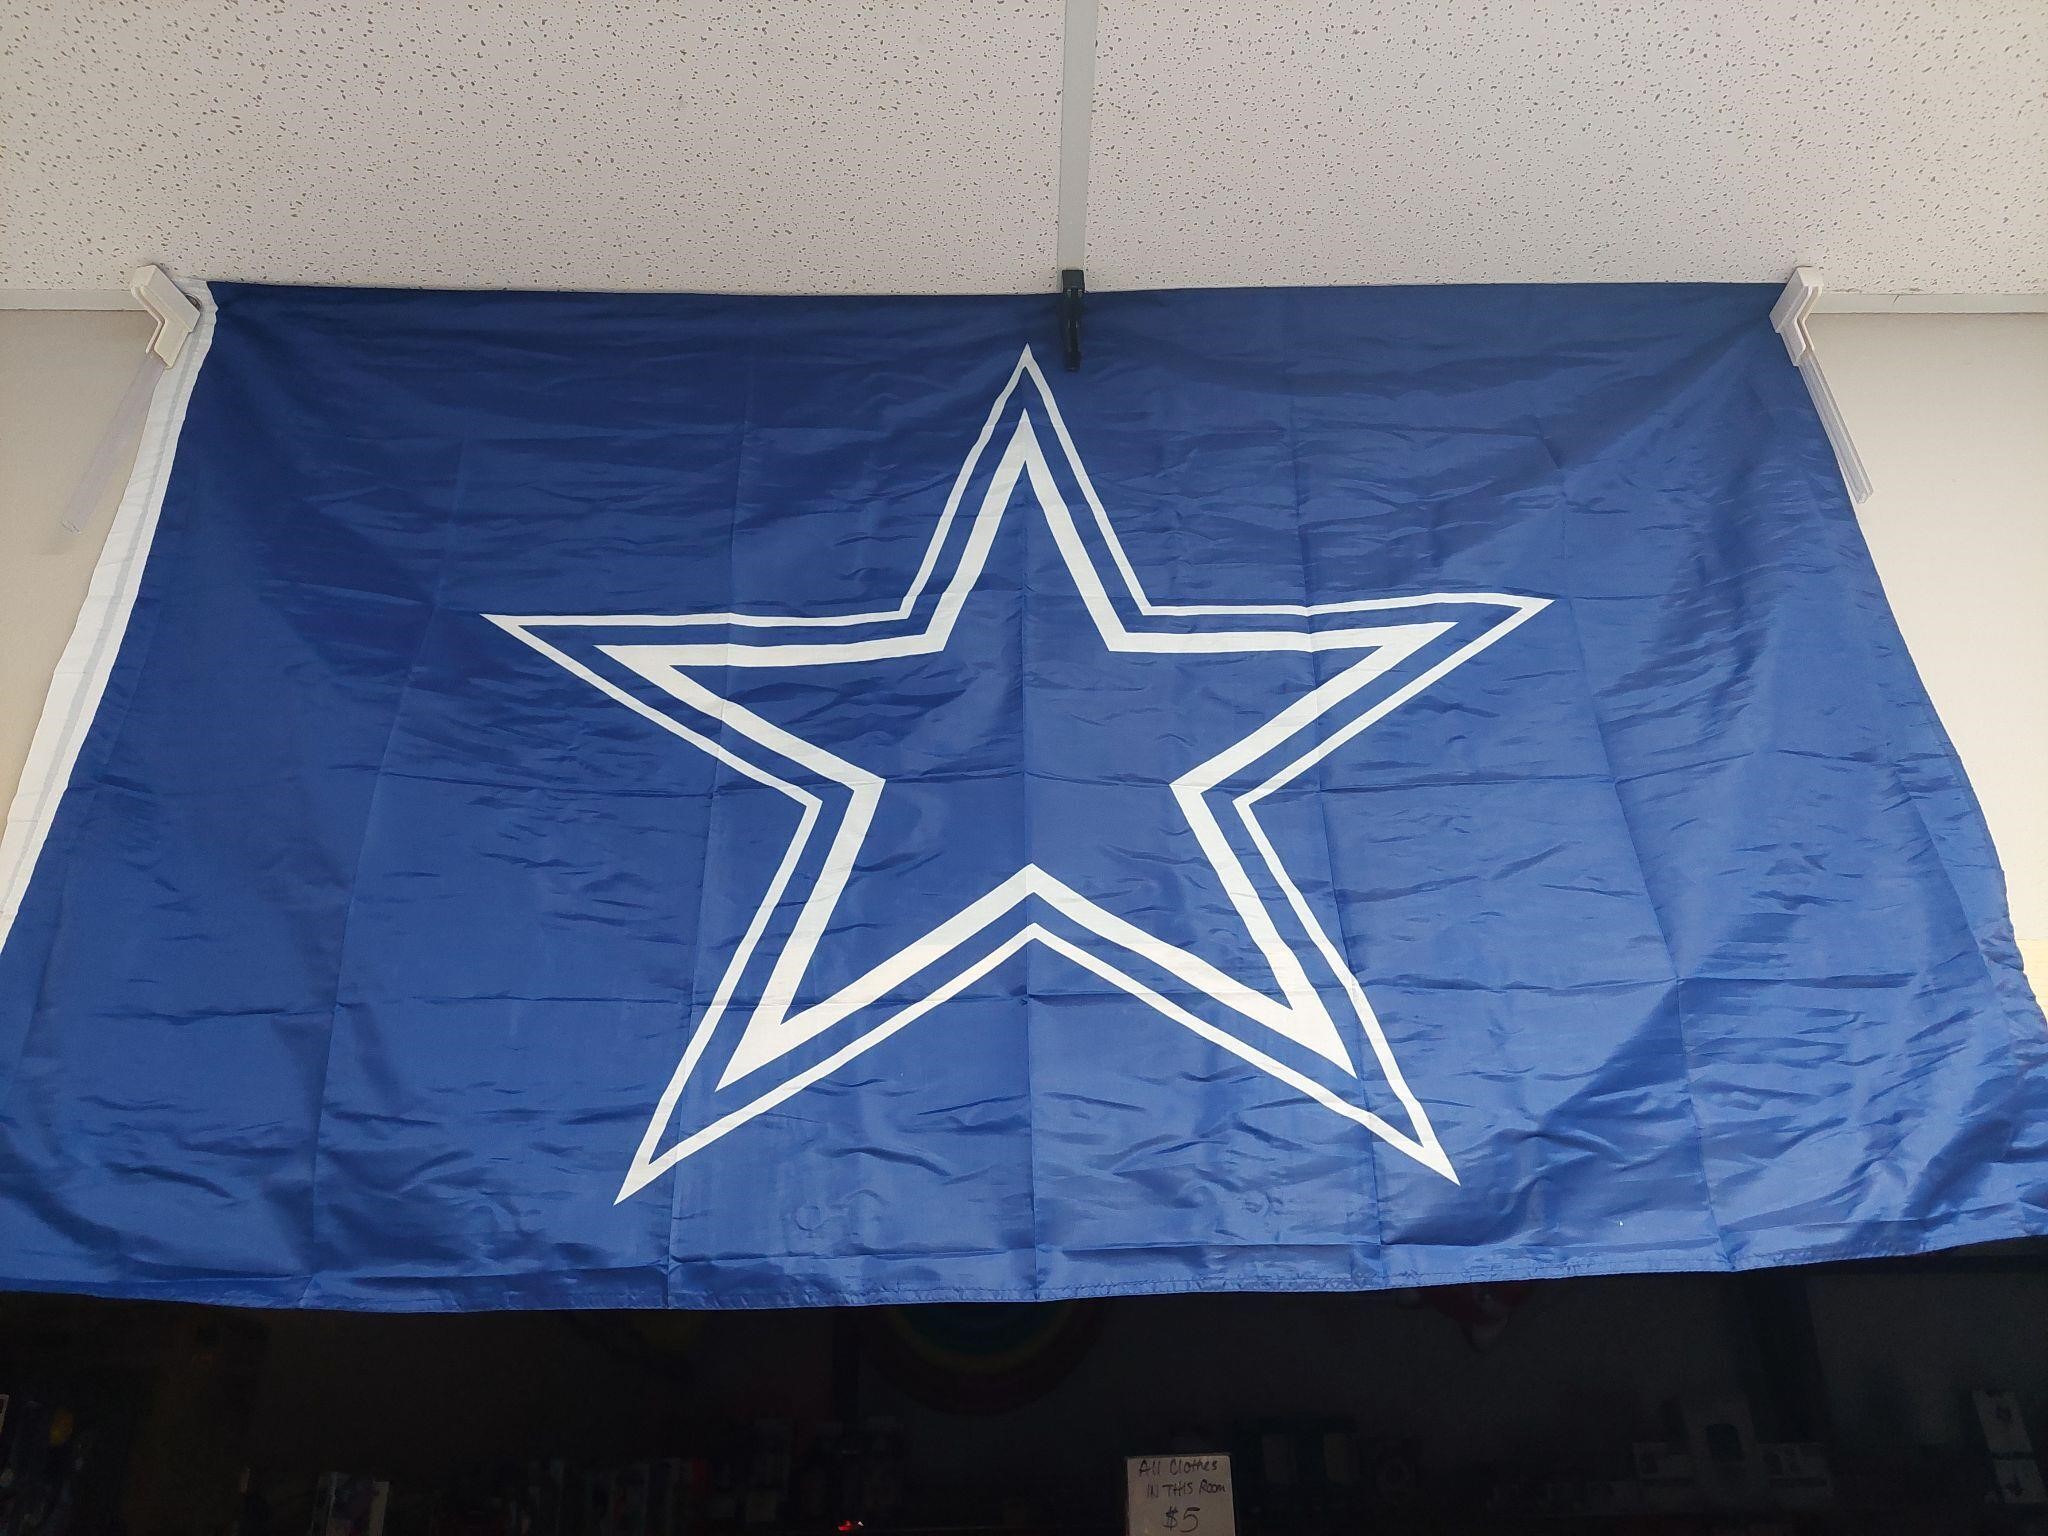 Dallas Cowboy's flag 58"x35"